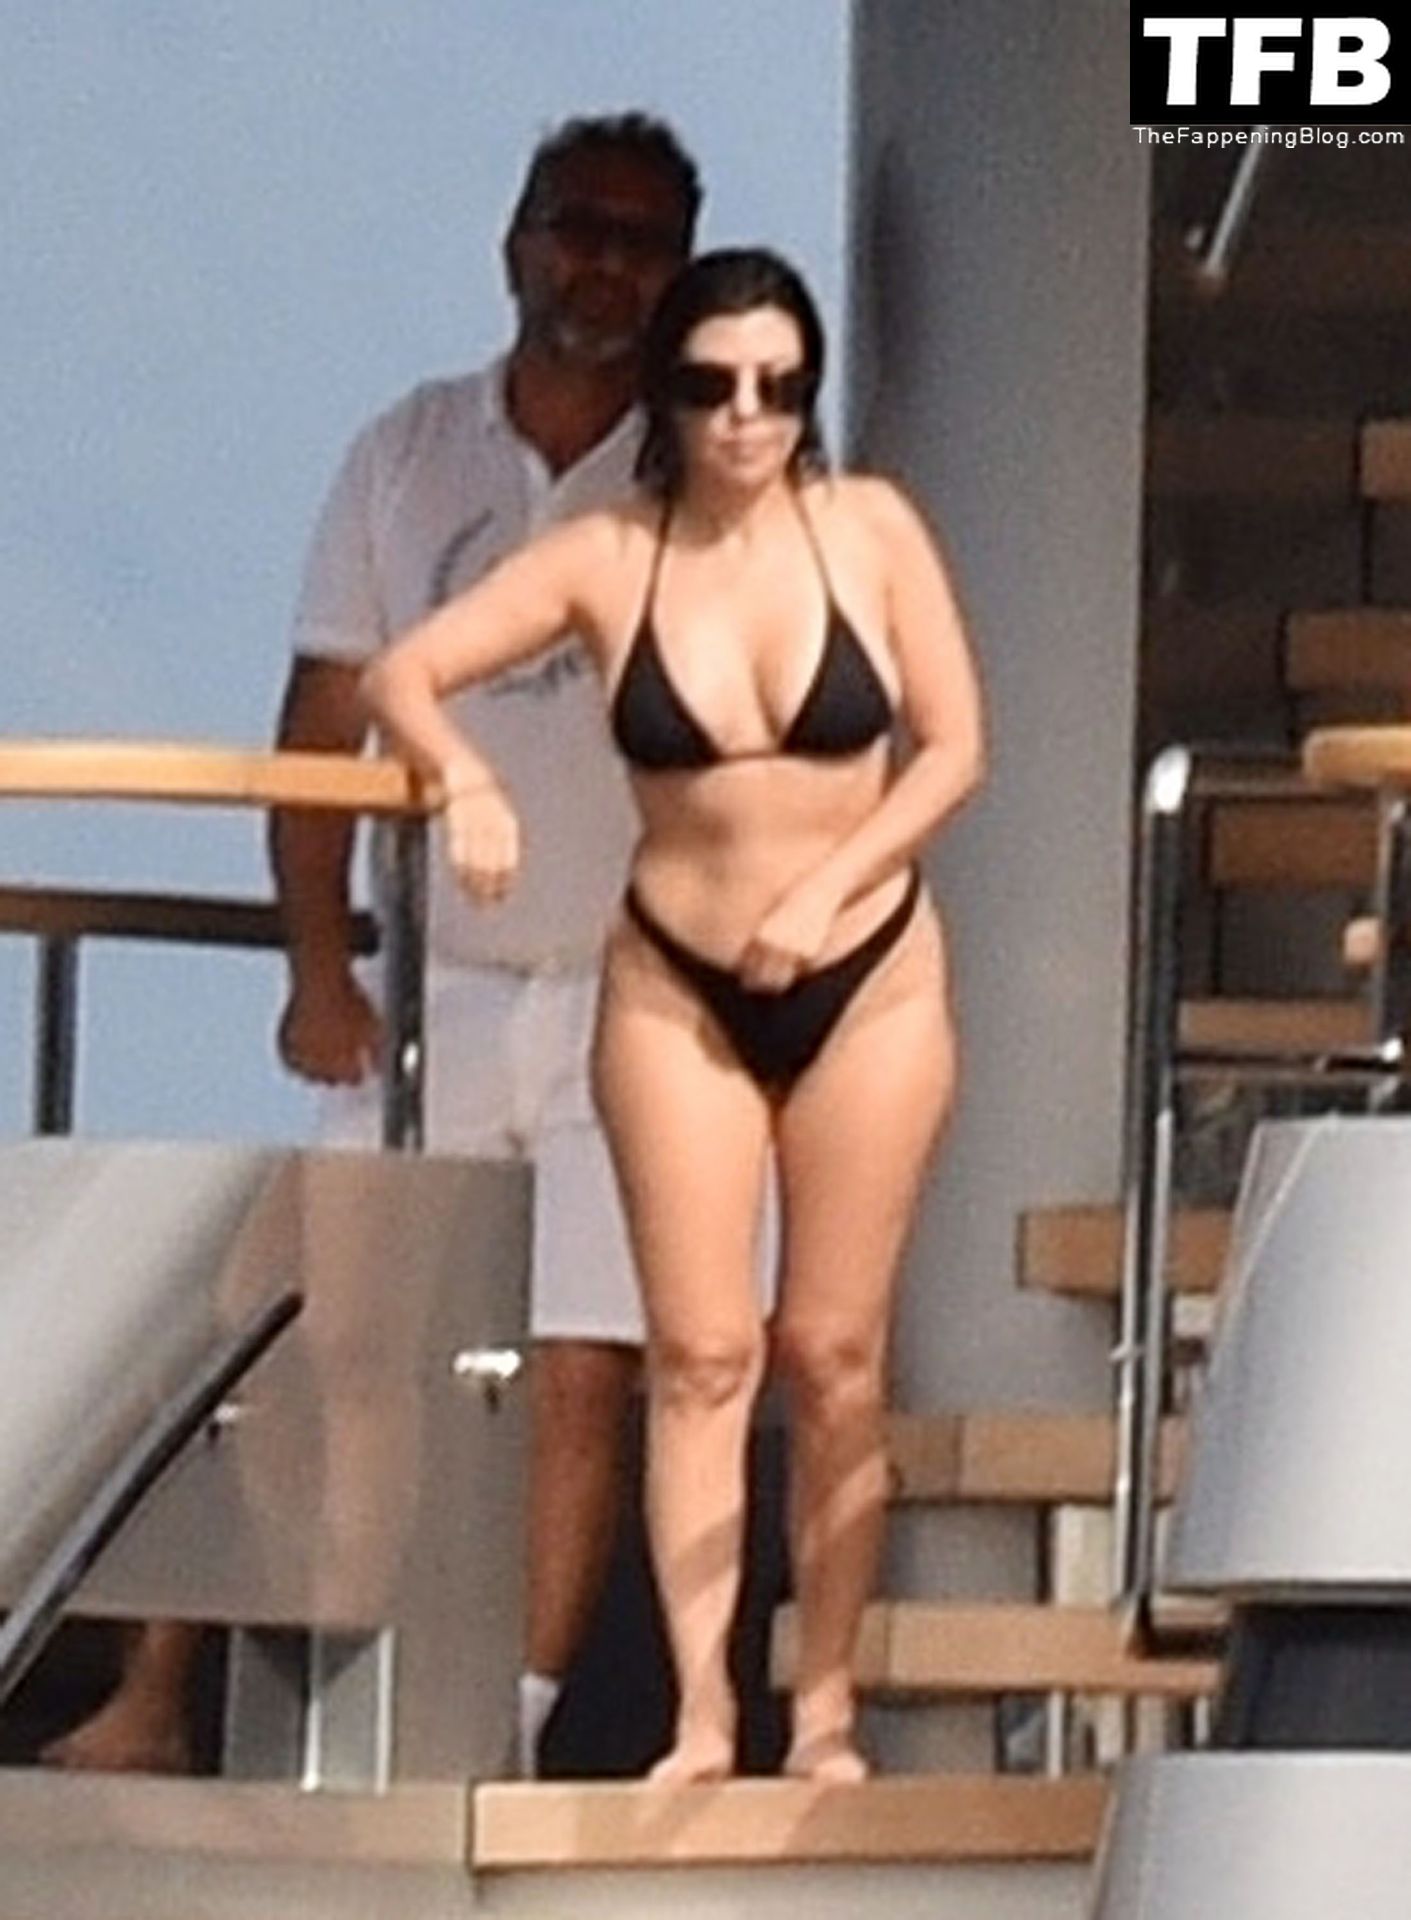 Kourtney-Kardashian-Sexy-The-Fappening-Blog-5-1.jpg